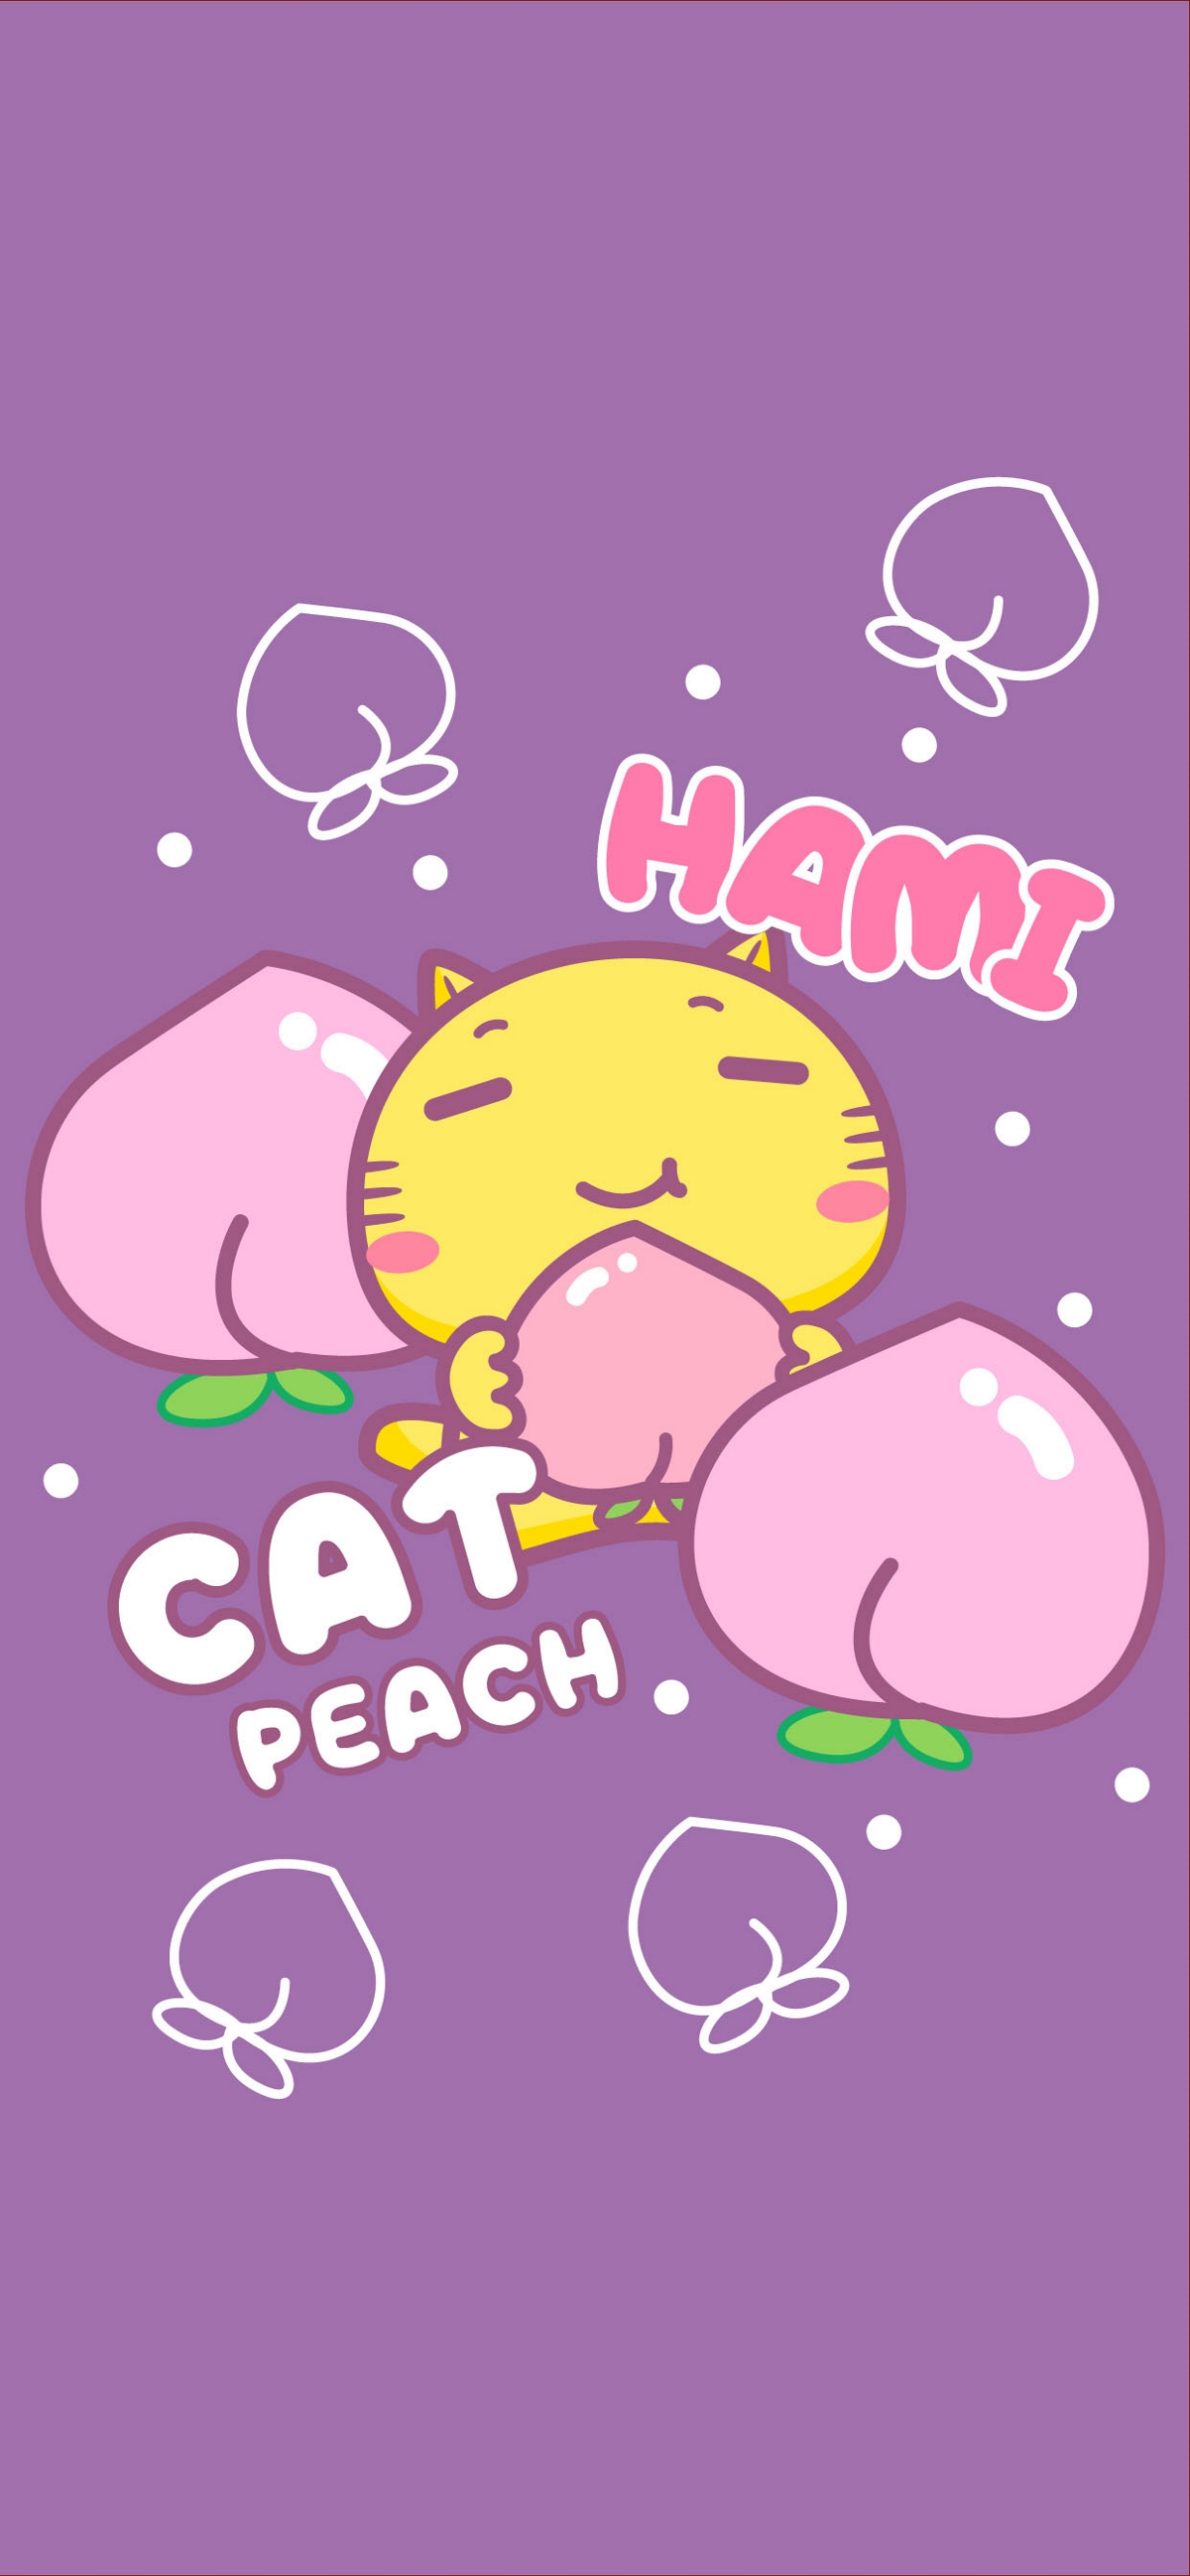 哈咪猫爱桃子